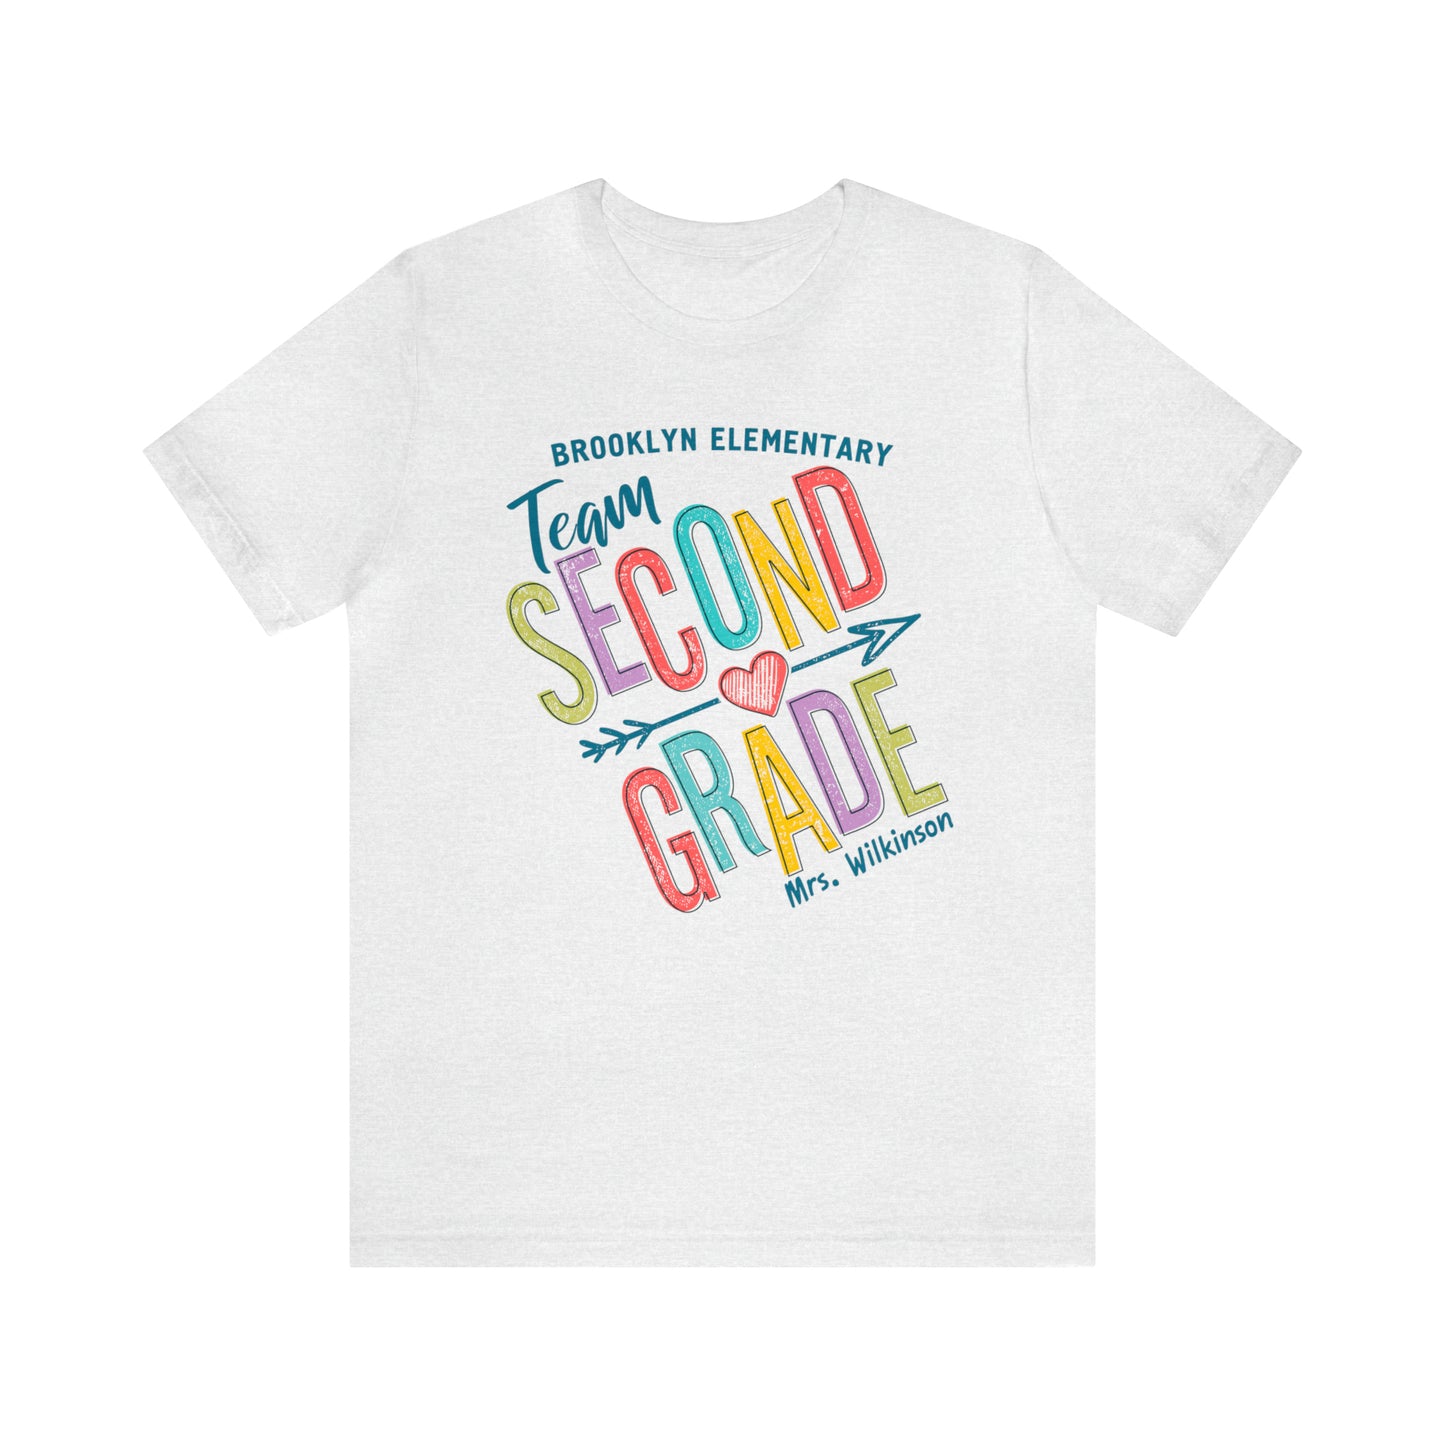 Second Grade Team Shirt, Personalized 2nd Grade Teacher Team T-shirt